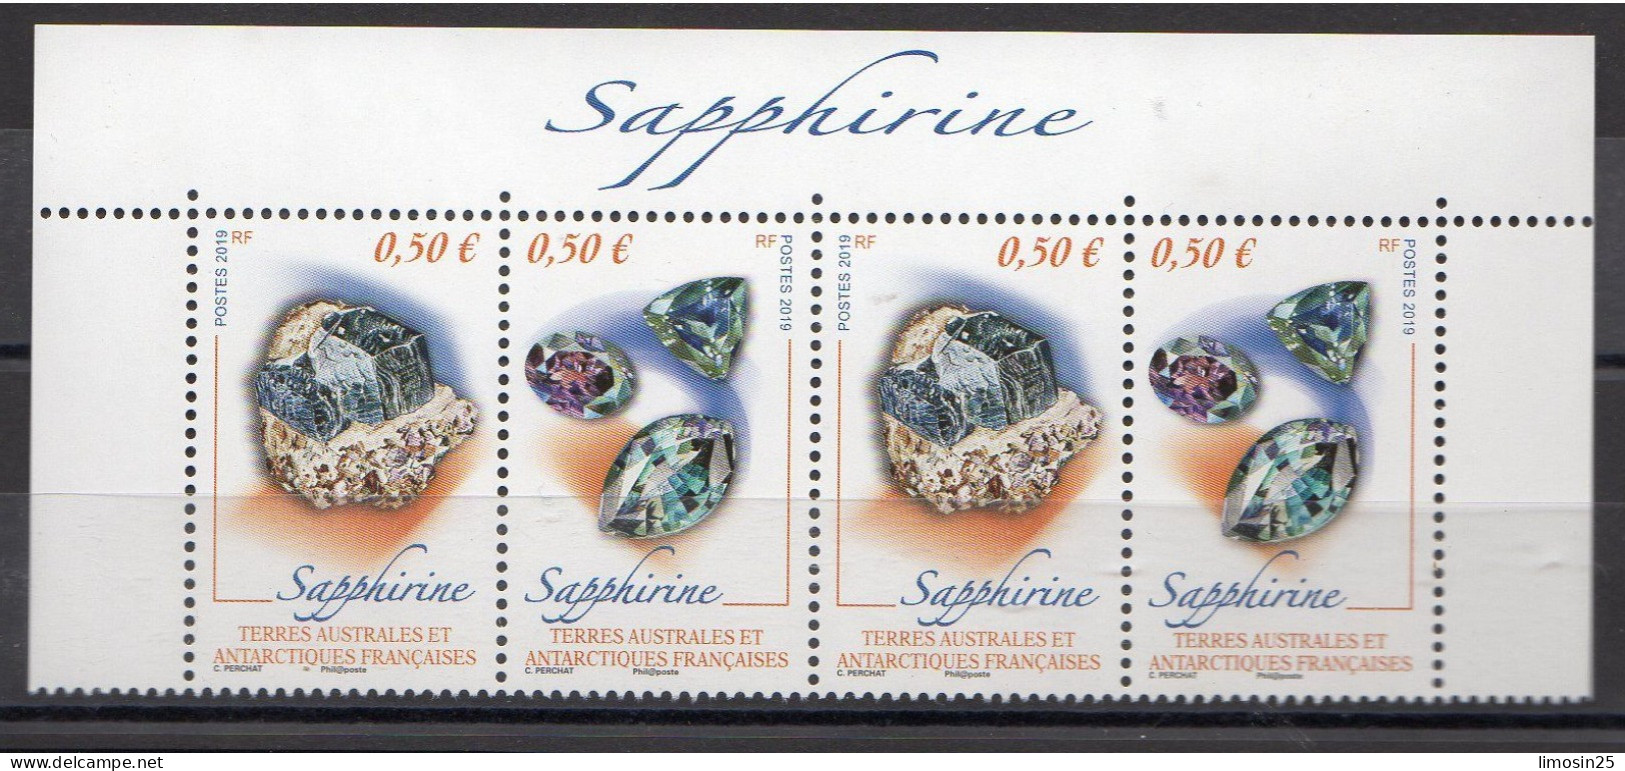 TAAF - Sapphirine - 2019 - Unused Stamps